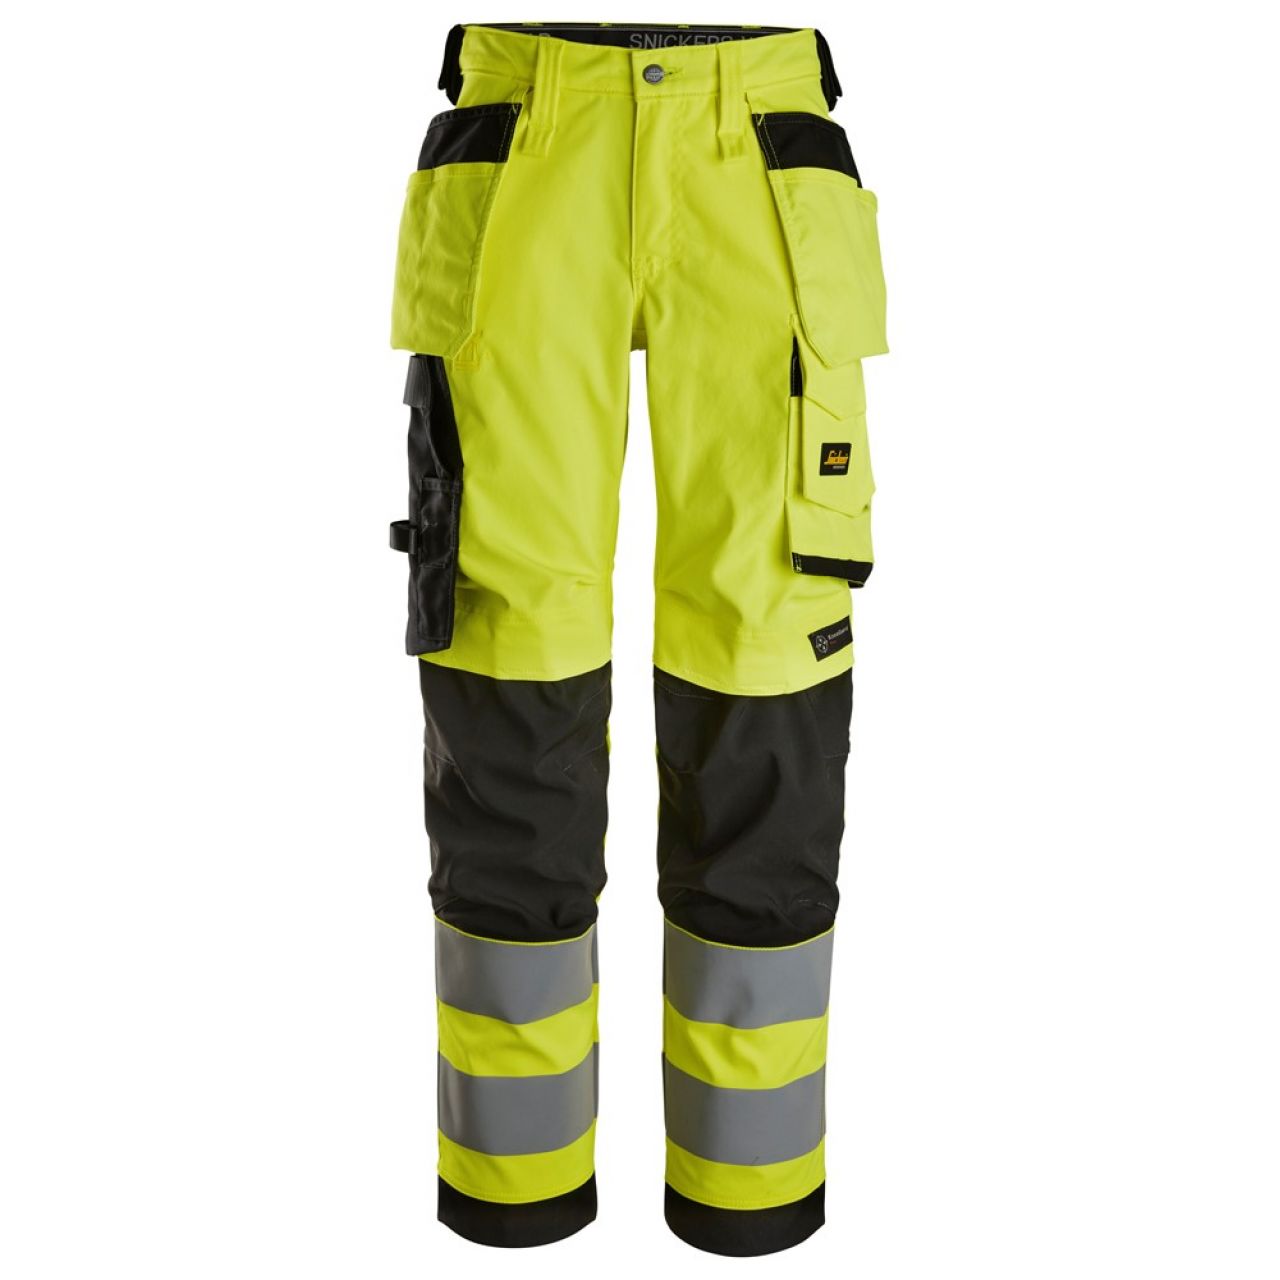 6743 Pantalones largos de trabajo elásticos de alta visibilidad clase 2 para mujer con bolsillos flotantes amarillo-negro talla 19